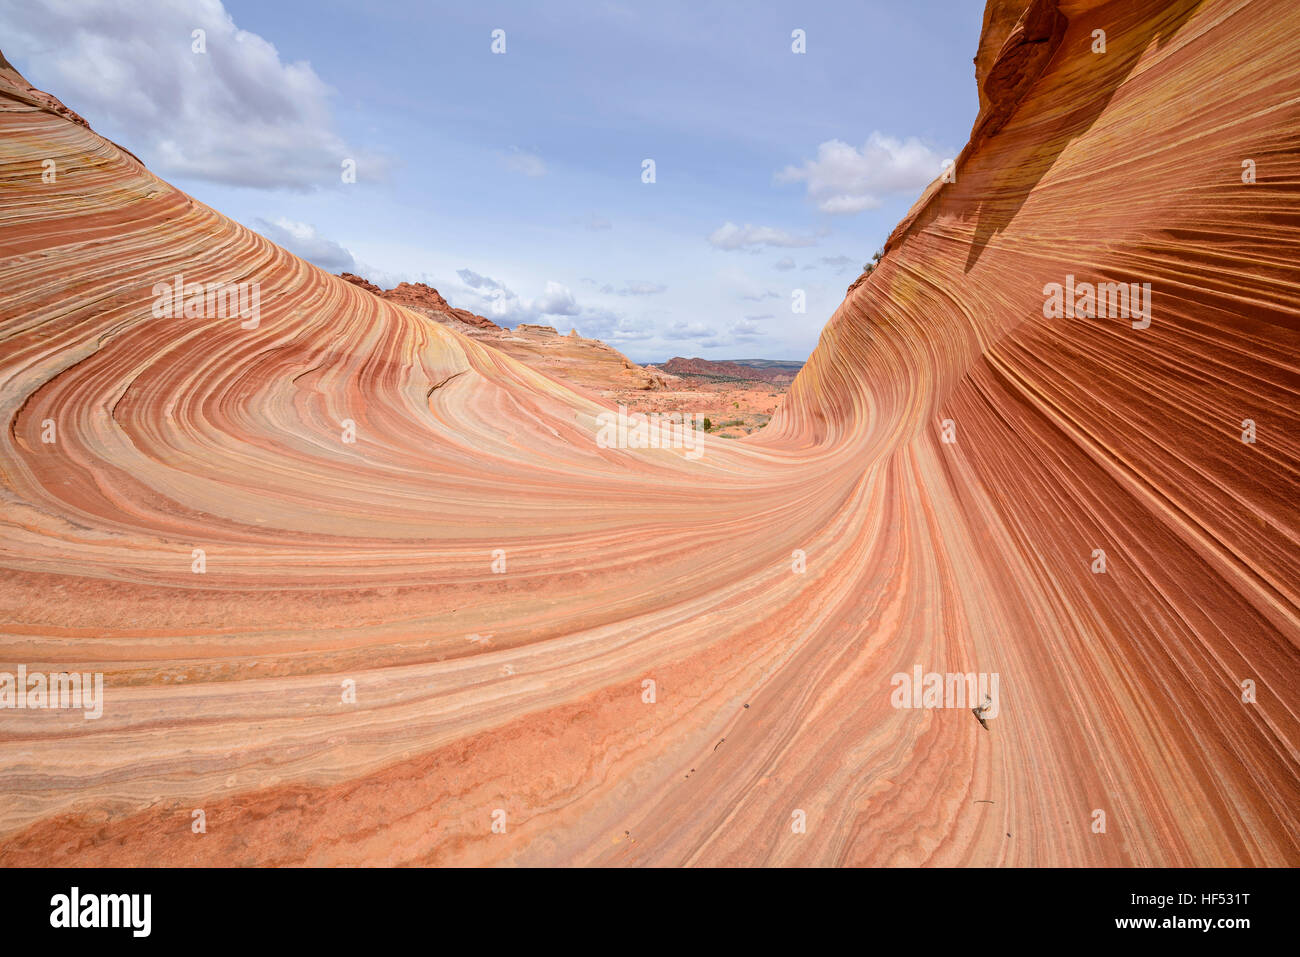 Onda de arenisca roja - Colorida y remolinos de rocas areniscas en la ola, una espectacular formación rocosa arenisca de erosión, Utah, EE.UU. Foto de stock